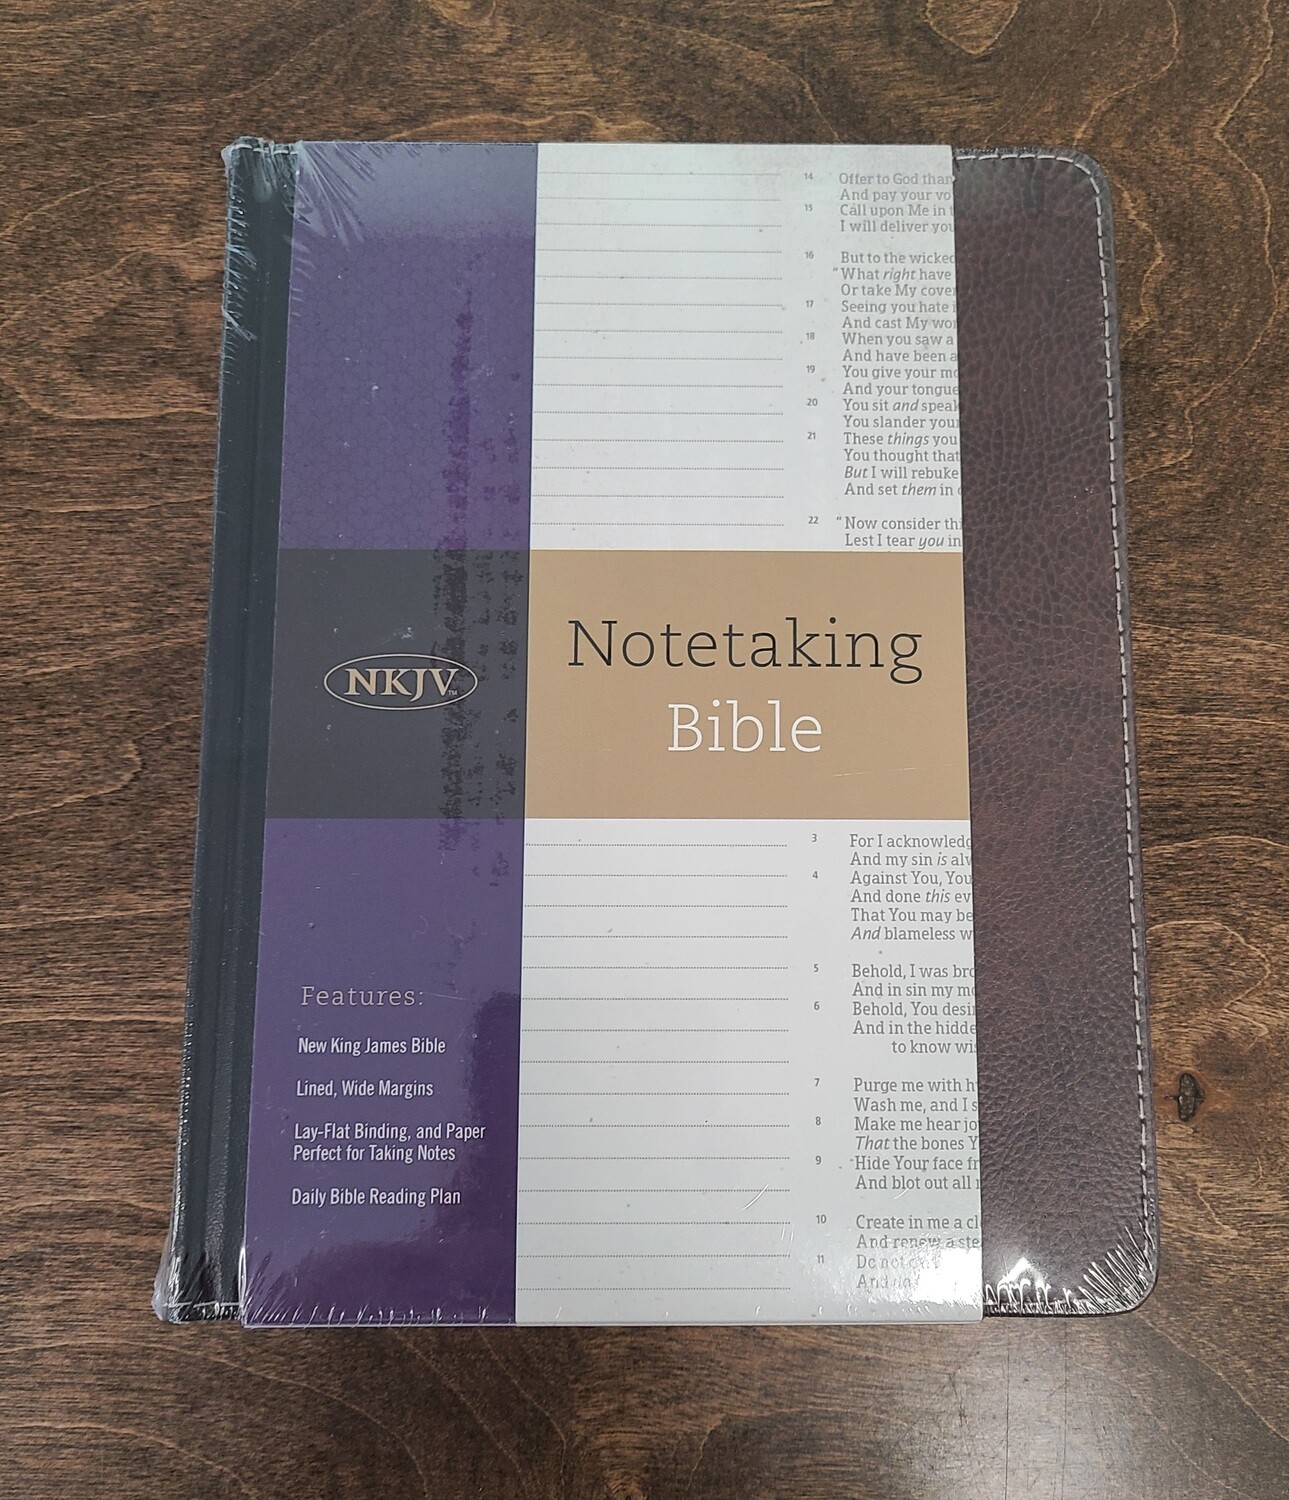 NKJV Notetaking Bible - Hardcover Black/Brown Bonded Leather